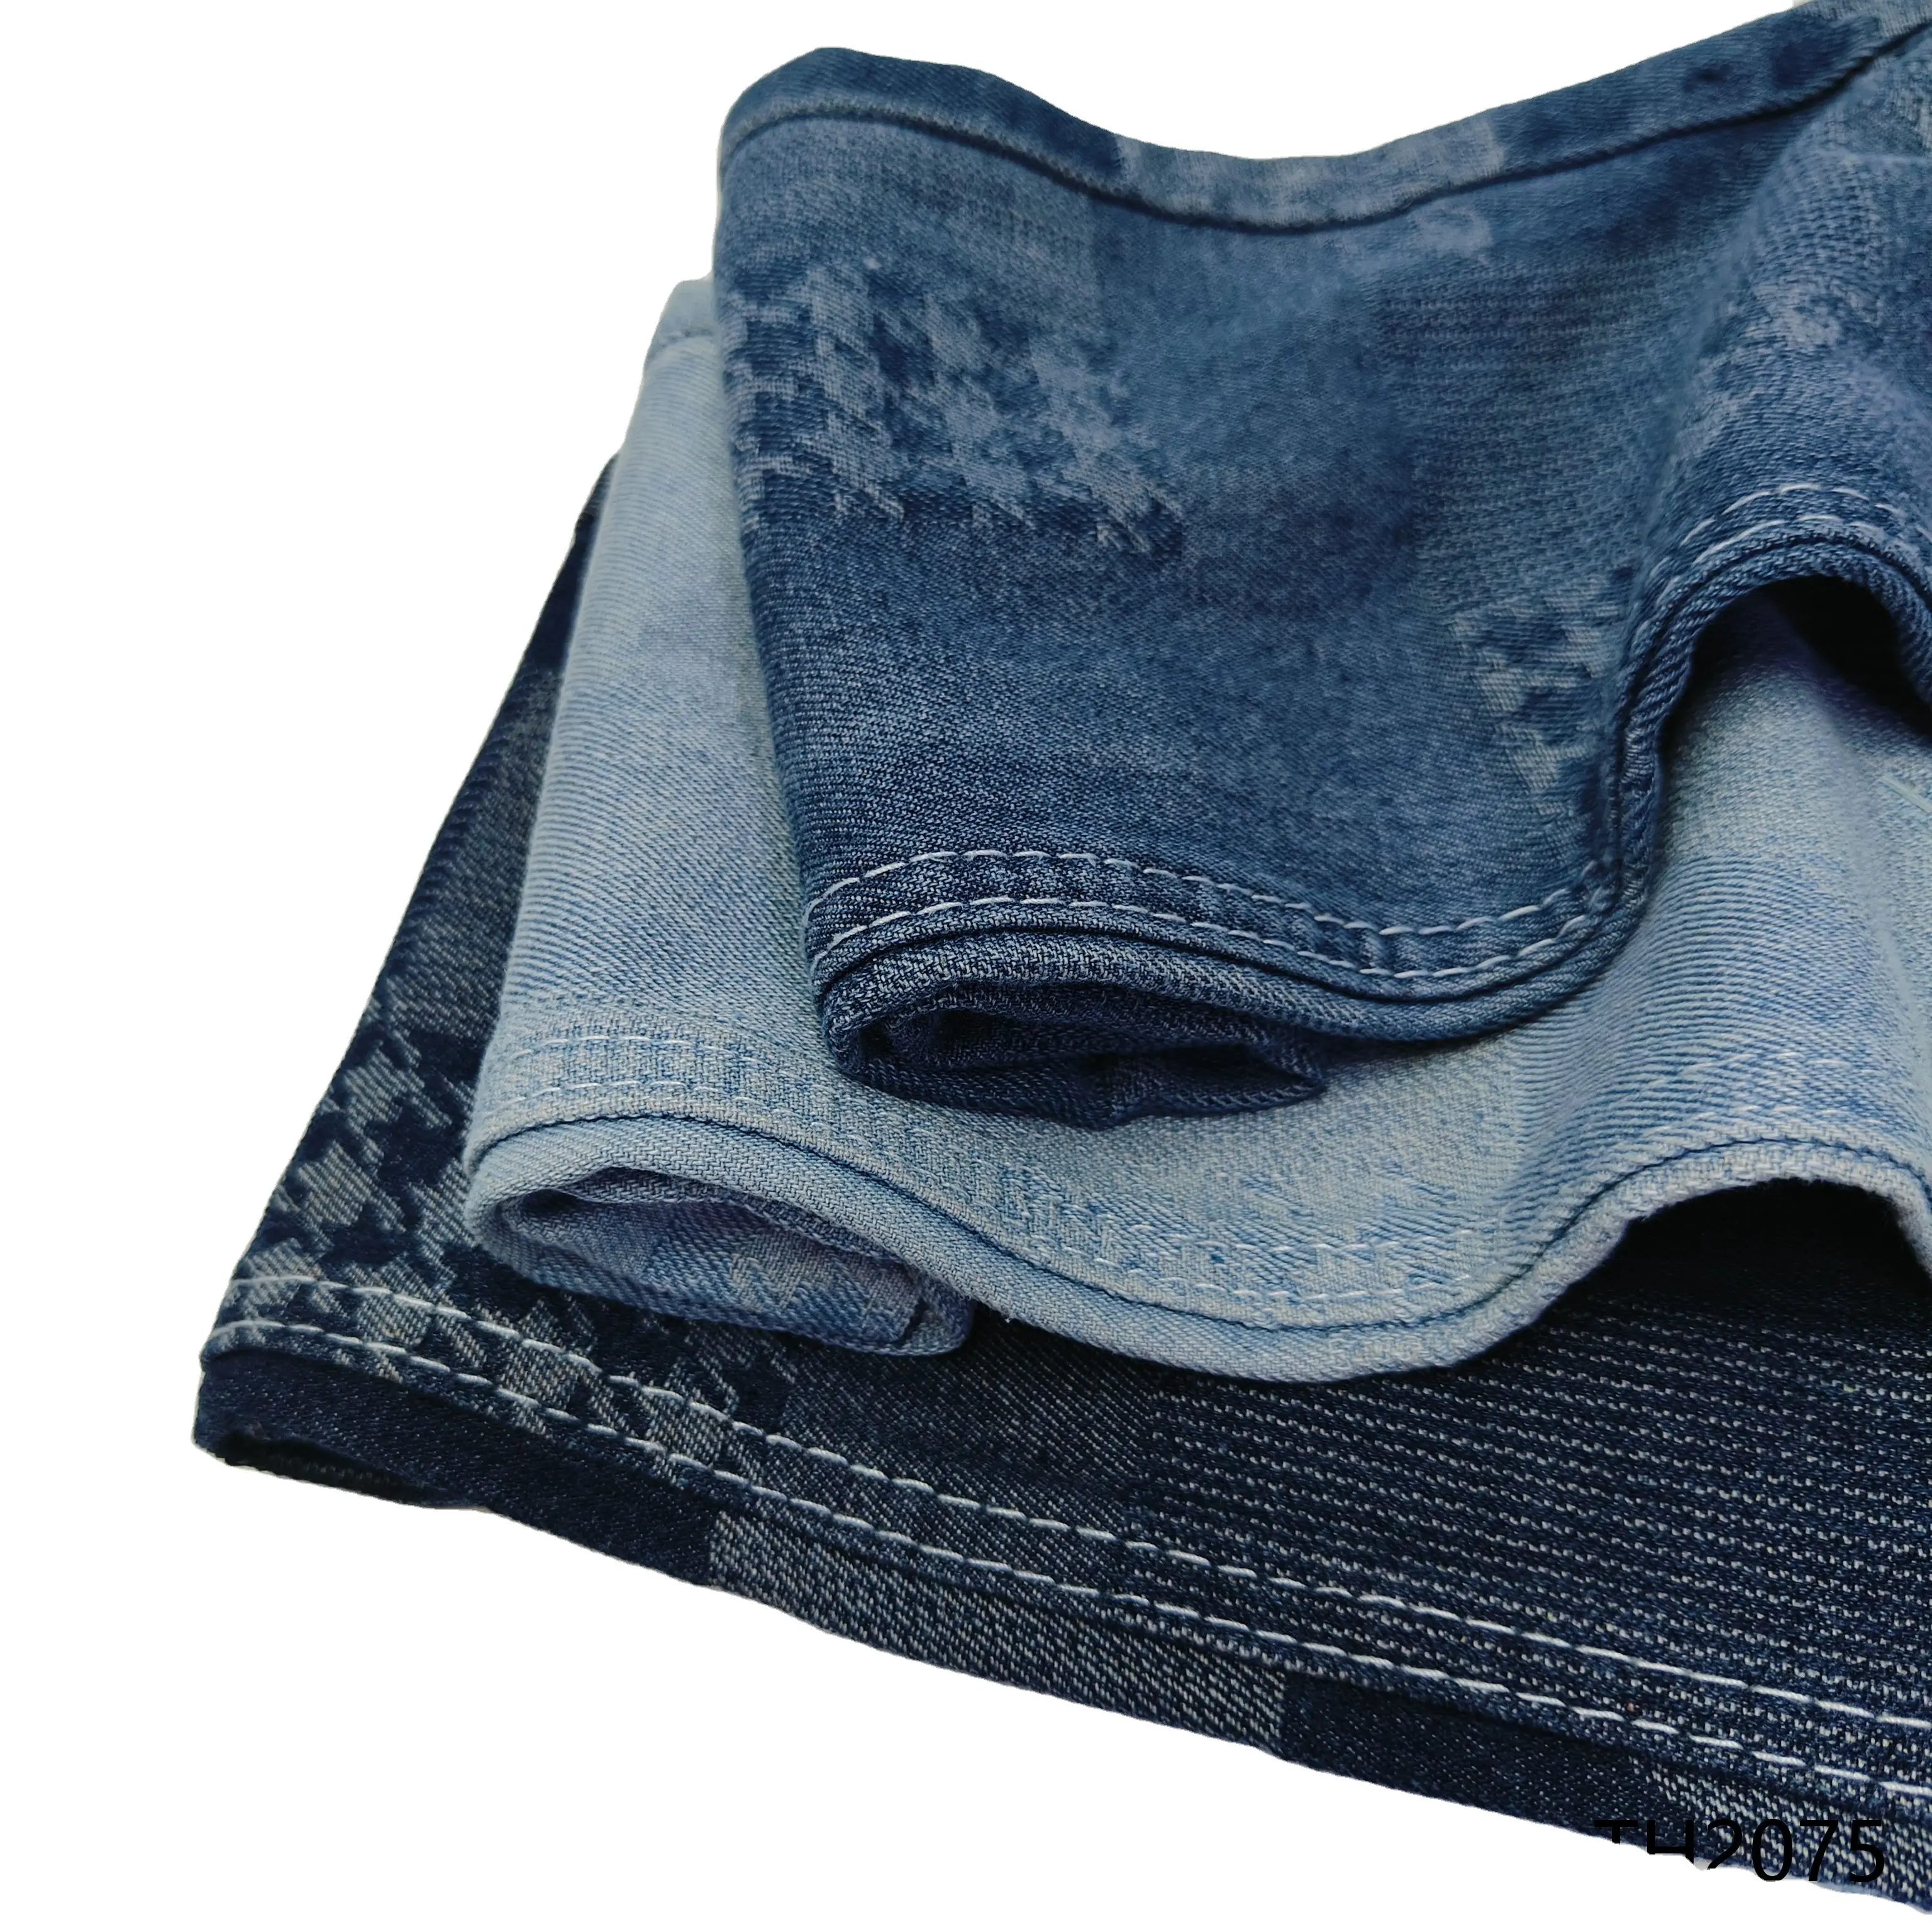 Tissu textile imprimé en denim, résistant à l'usure et durable, adapté à tous les types de production de vêtements